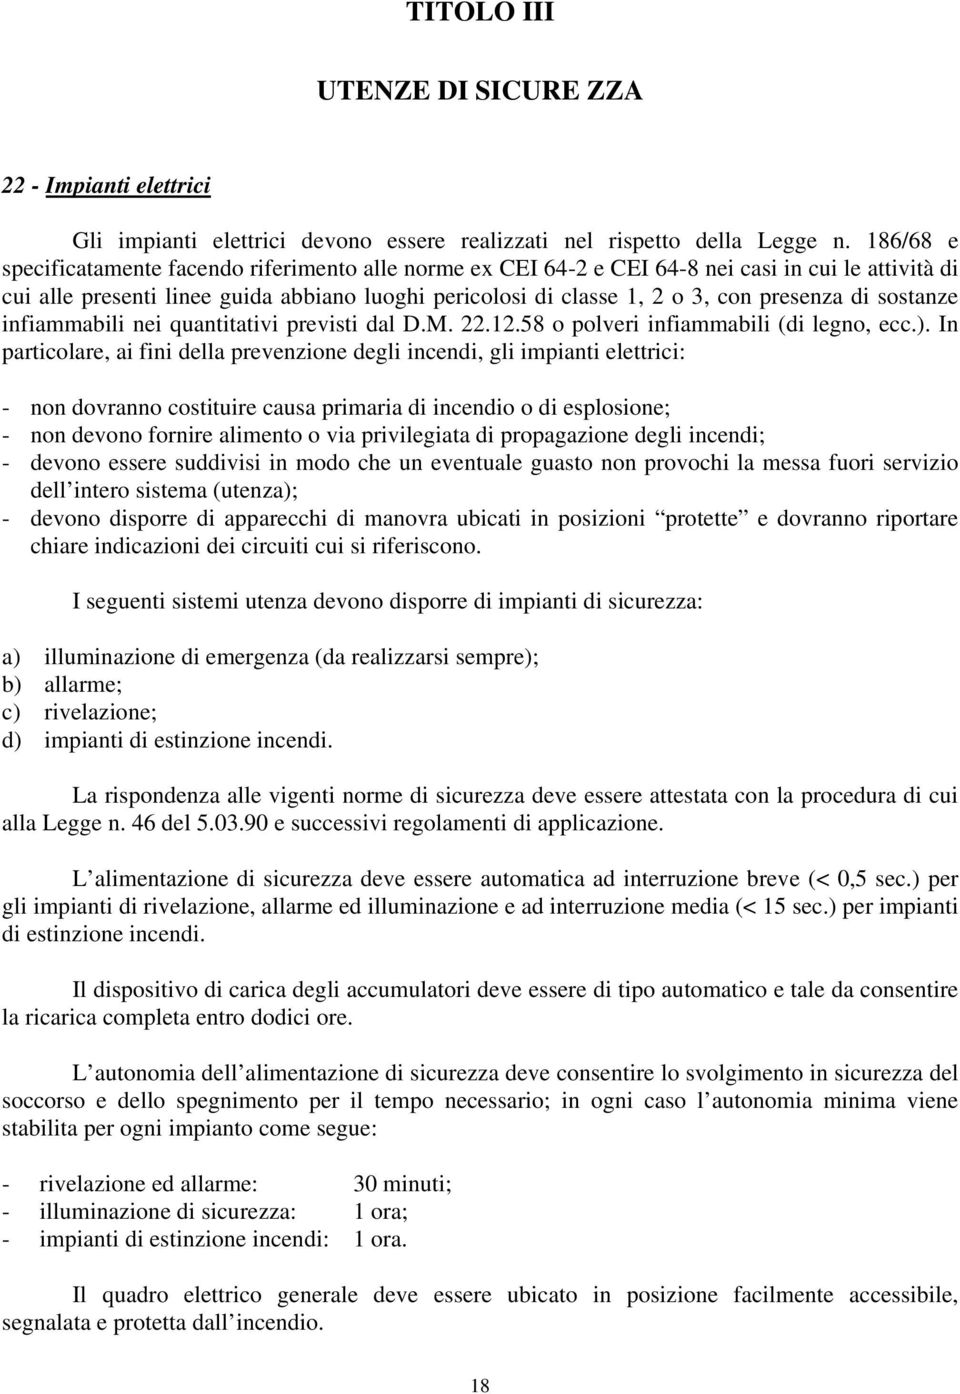 di sostanze infiammabili nei quantitativi previsti dal D.M. 22.12.58 o polveri infiammabili (di legno, ecc.).